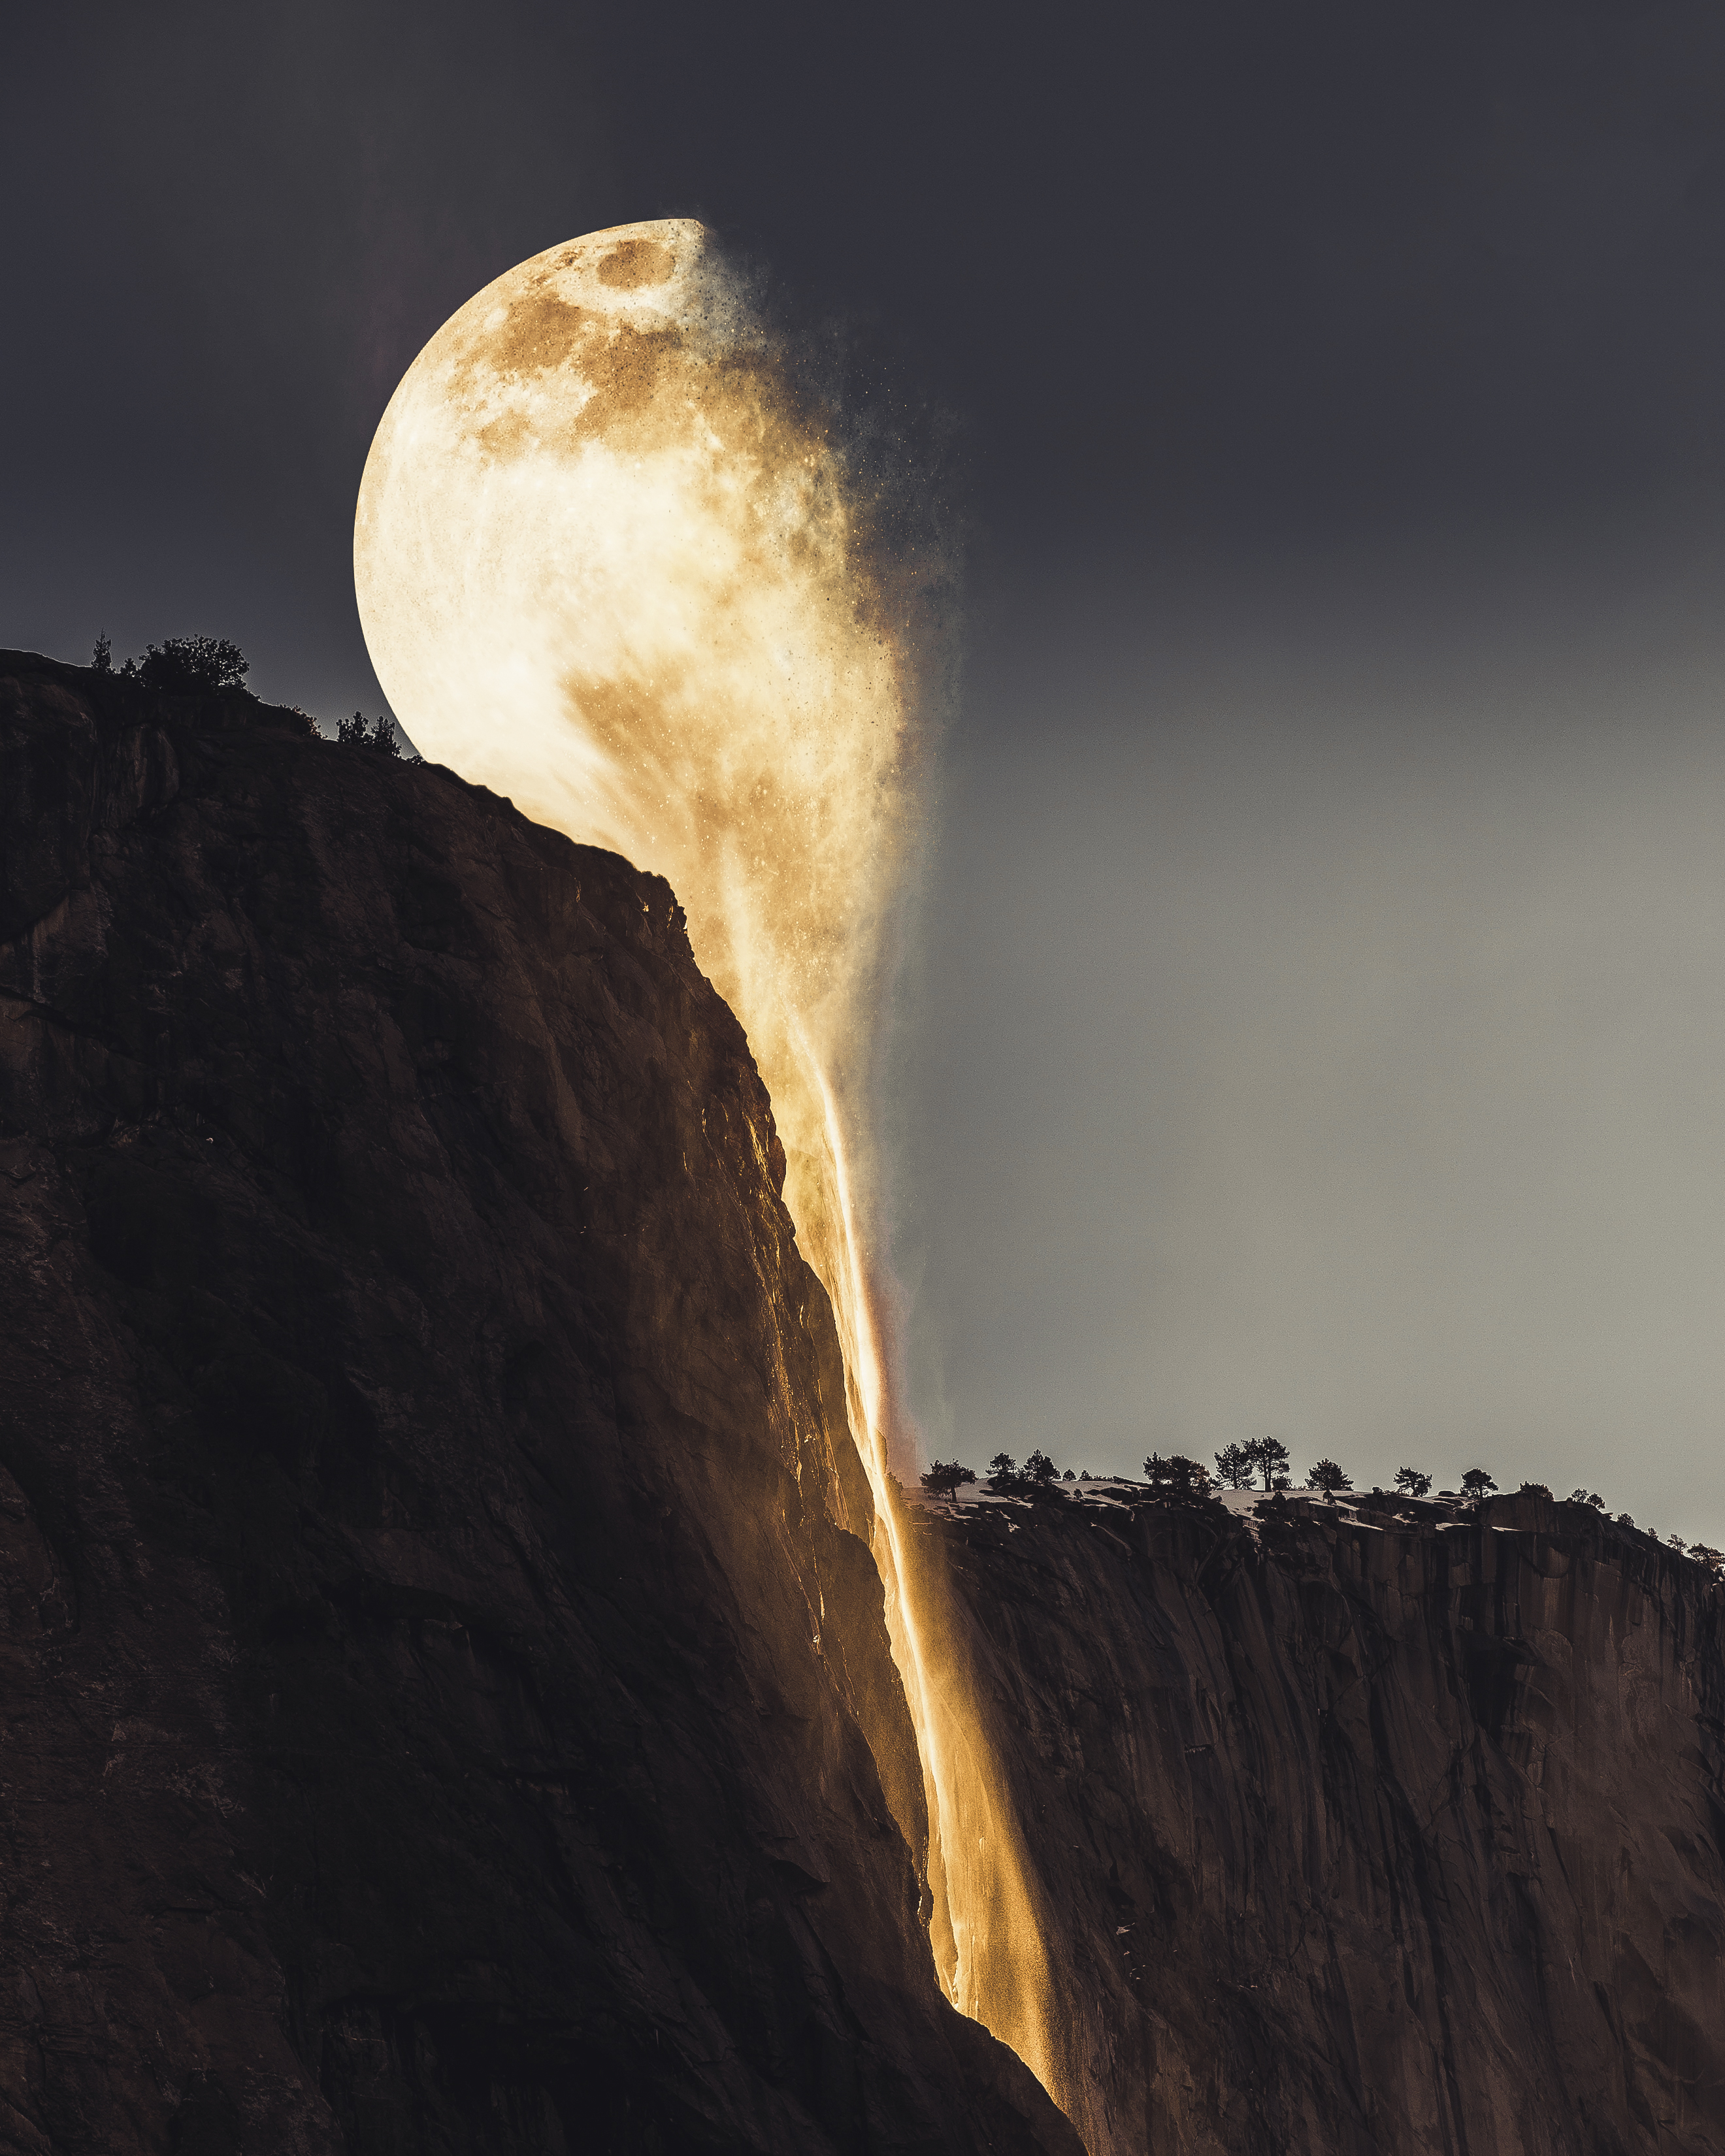 Необычные картинки. Джастин Питерс фотоманипуляции. Необычная Луна. Завораживающее зрелище.